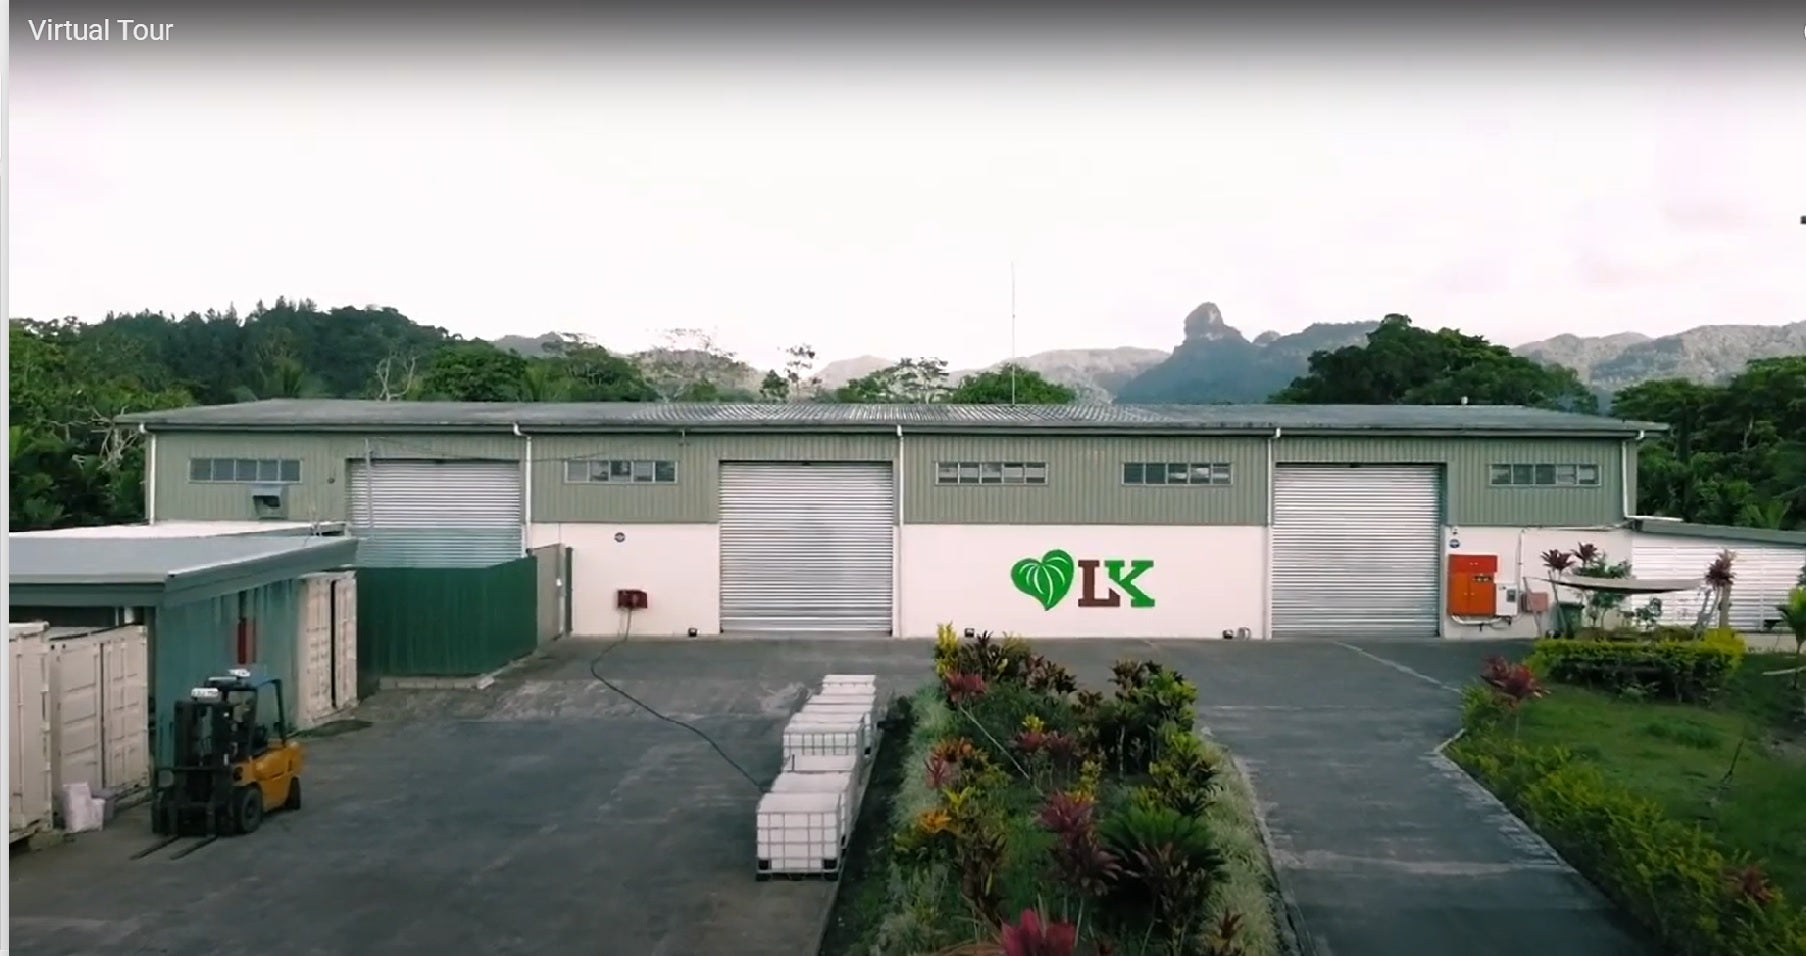 Load video: Virtual Tour of Lami Kava Facility